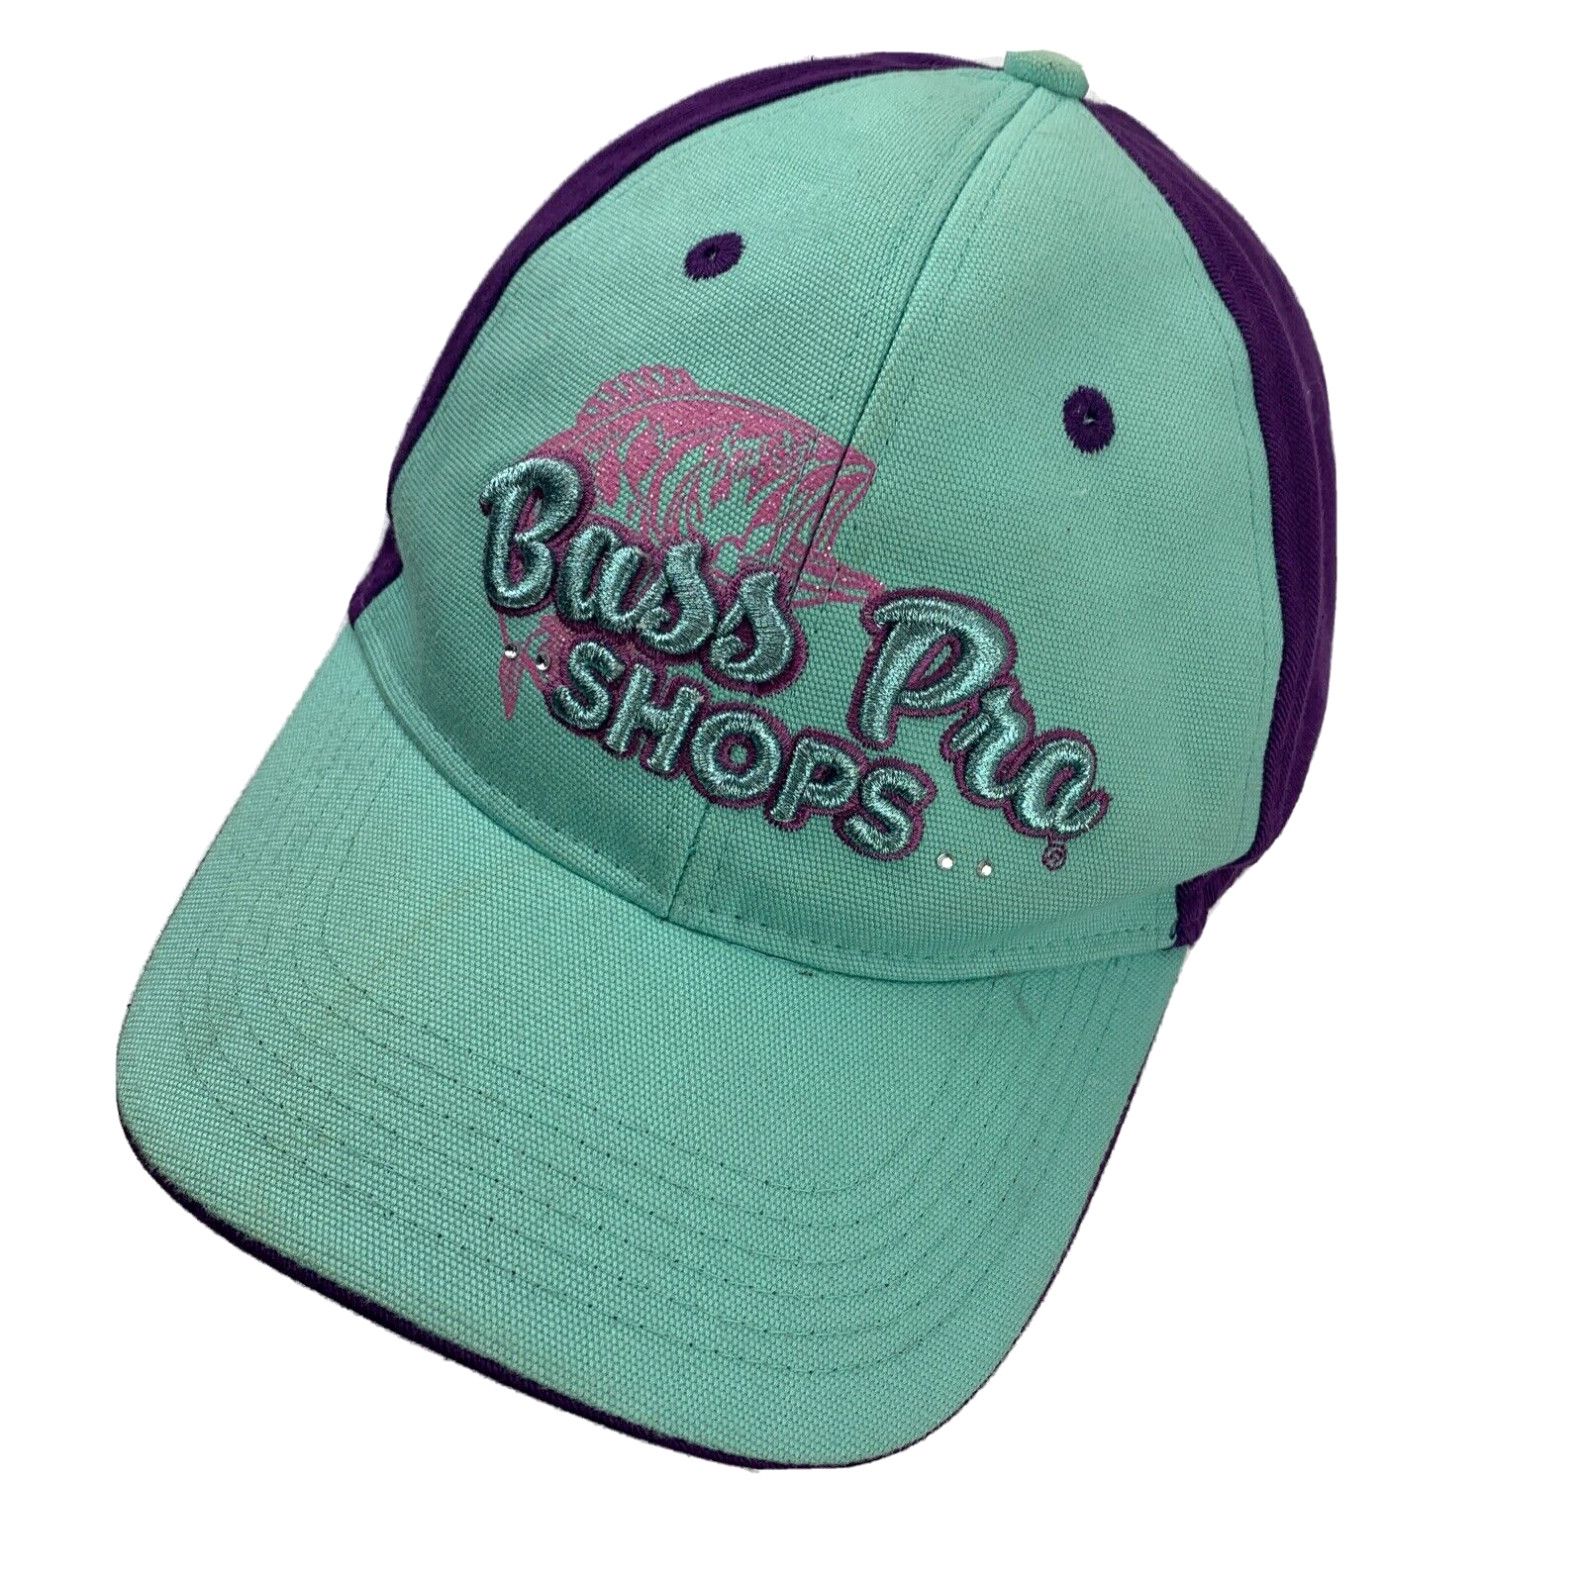 Bass Pro Shops Bass Pro Shops Women's Teal Purple Ball Cap Hat